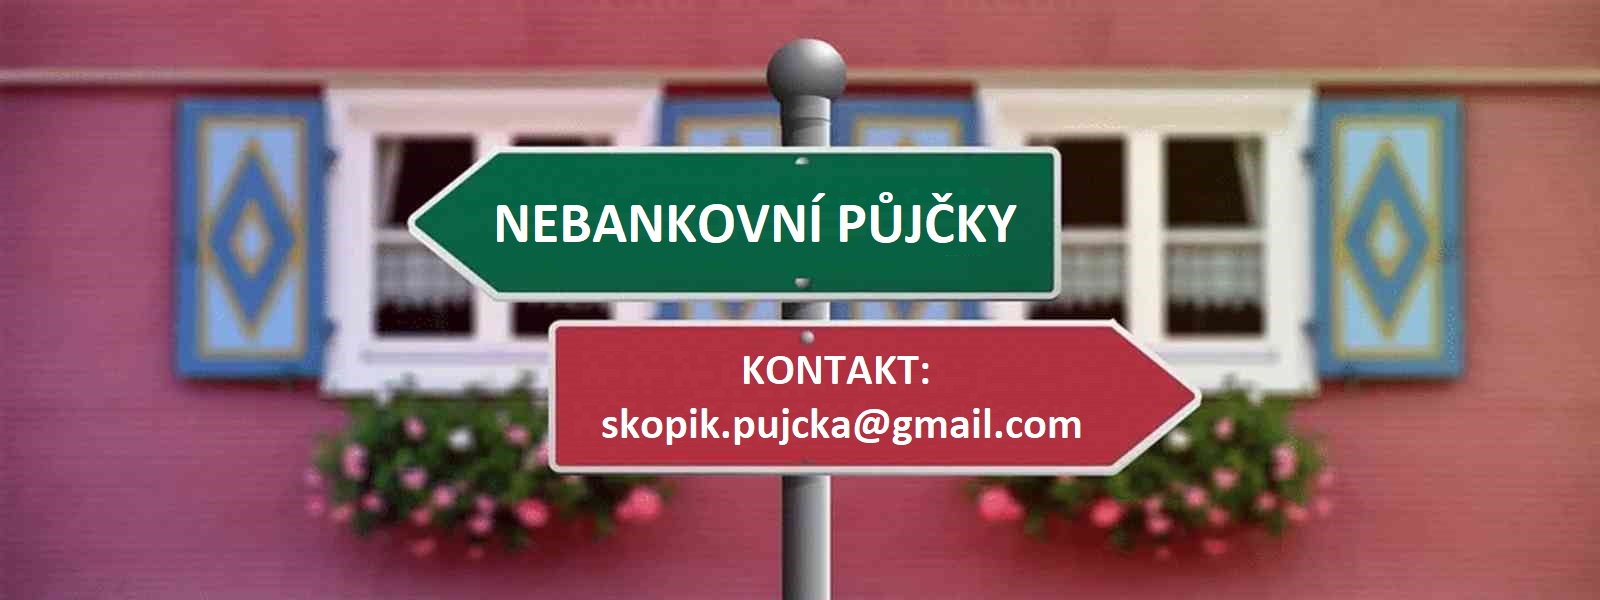 Nabídka rychlé půjčky: skopik.pujcka@gmail.com.